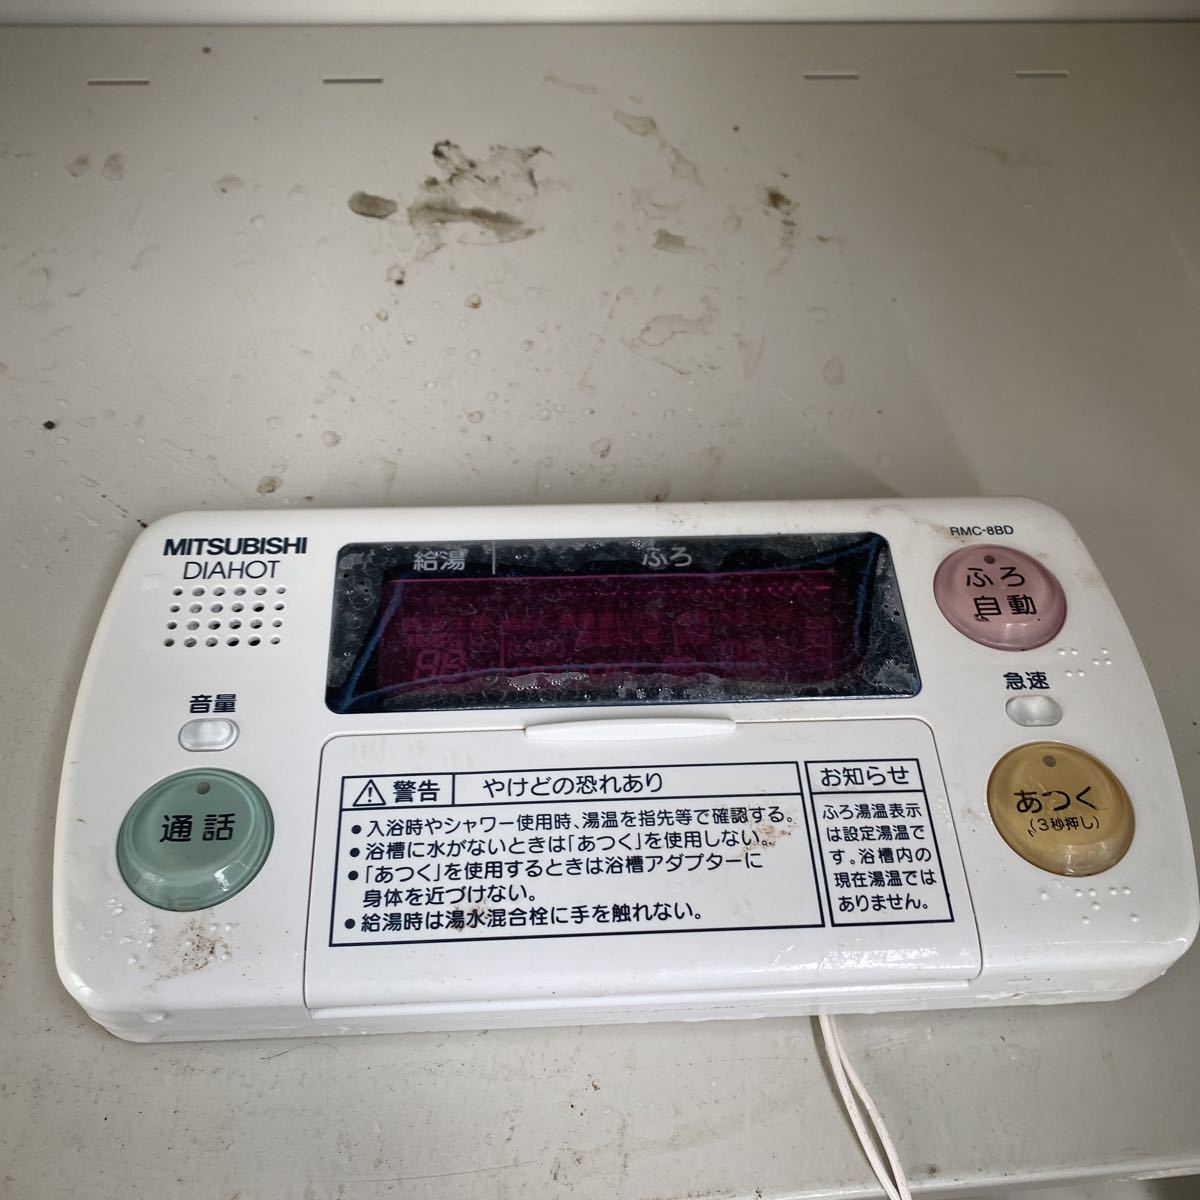 三菱 エコキュート 電気温水器 リモコン RMC-8BD(給湯設備)｜売買されたオークション情報、yahooの商品情報をアーカイブ公開